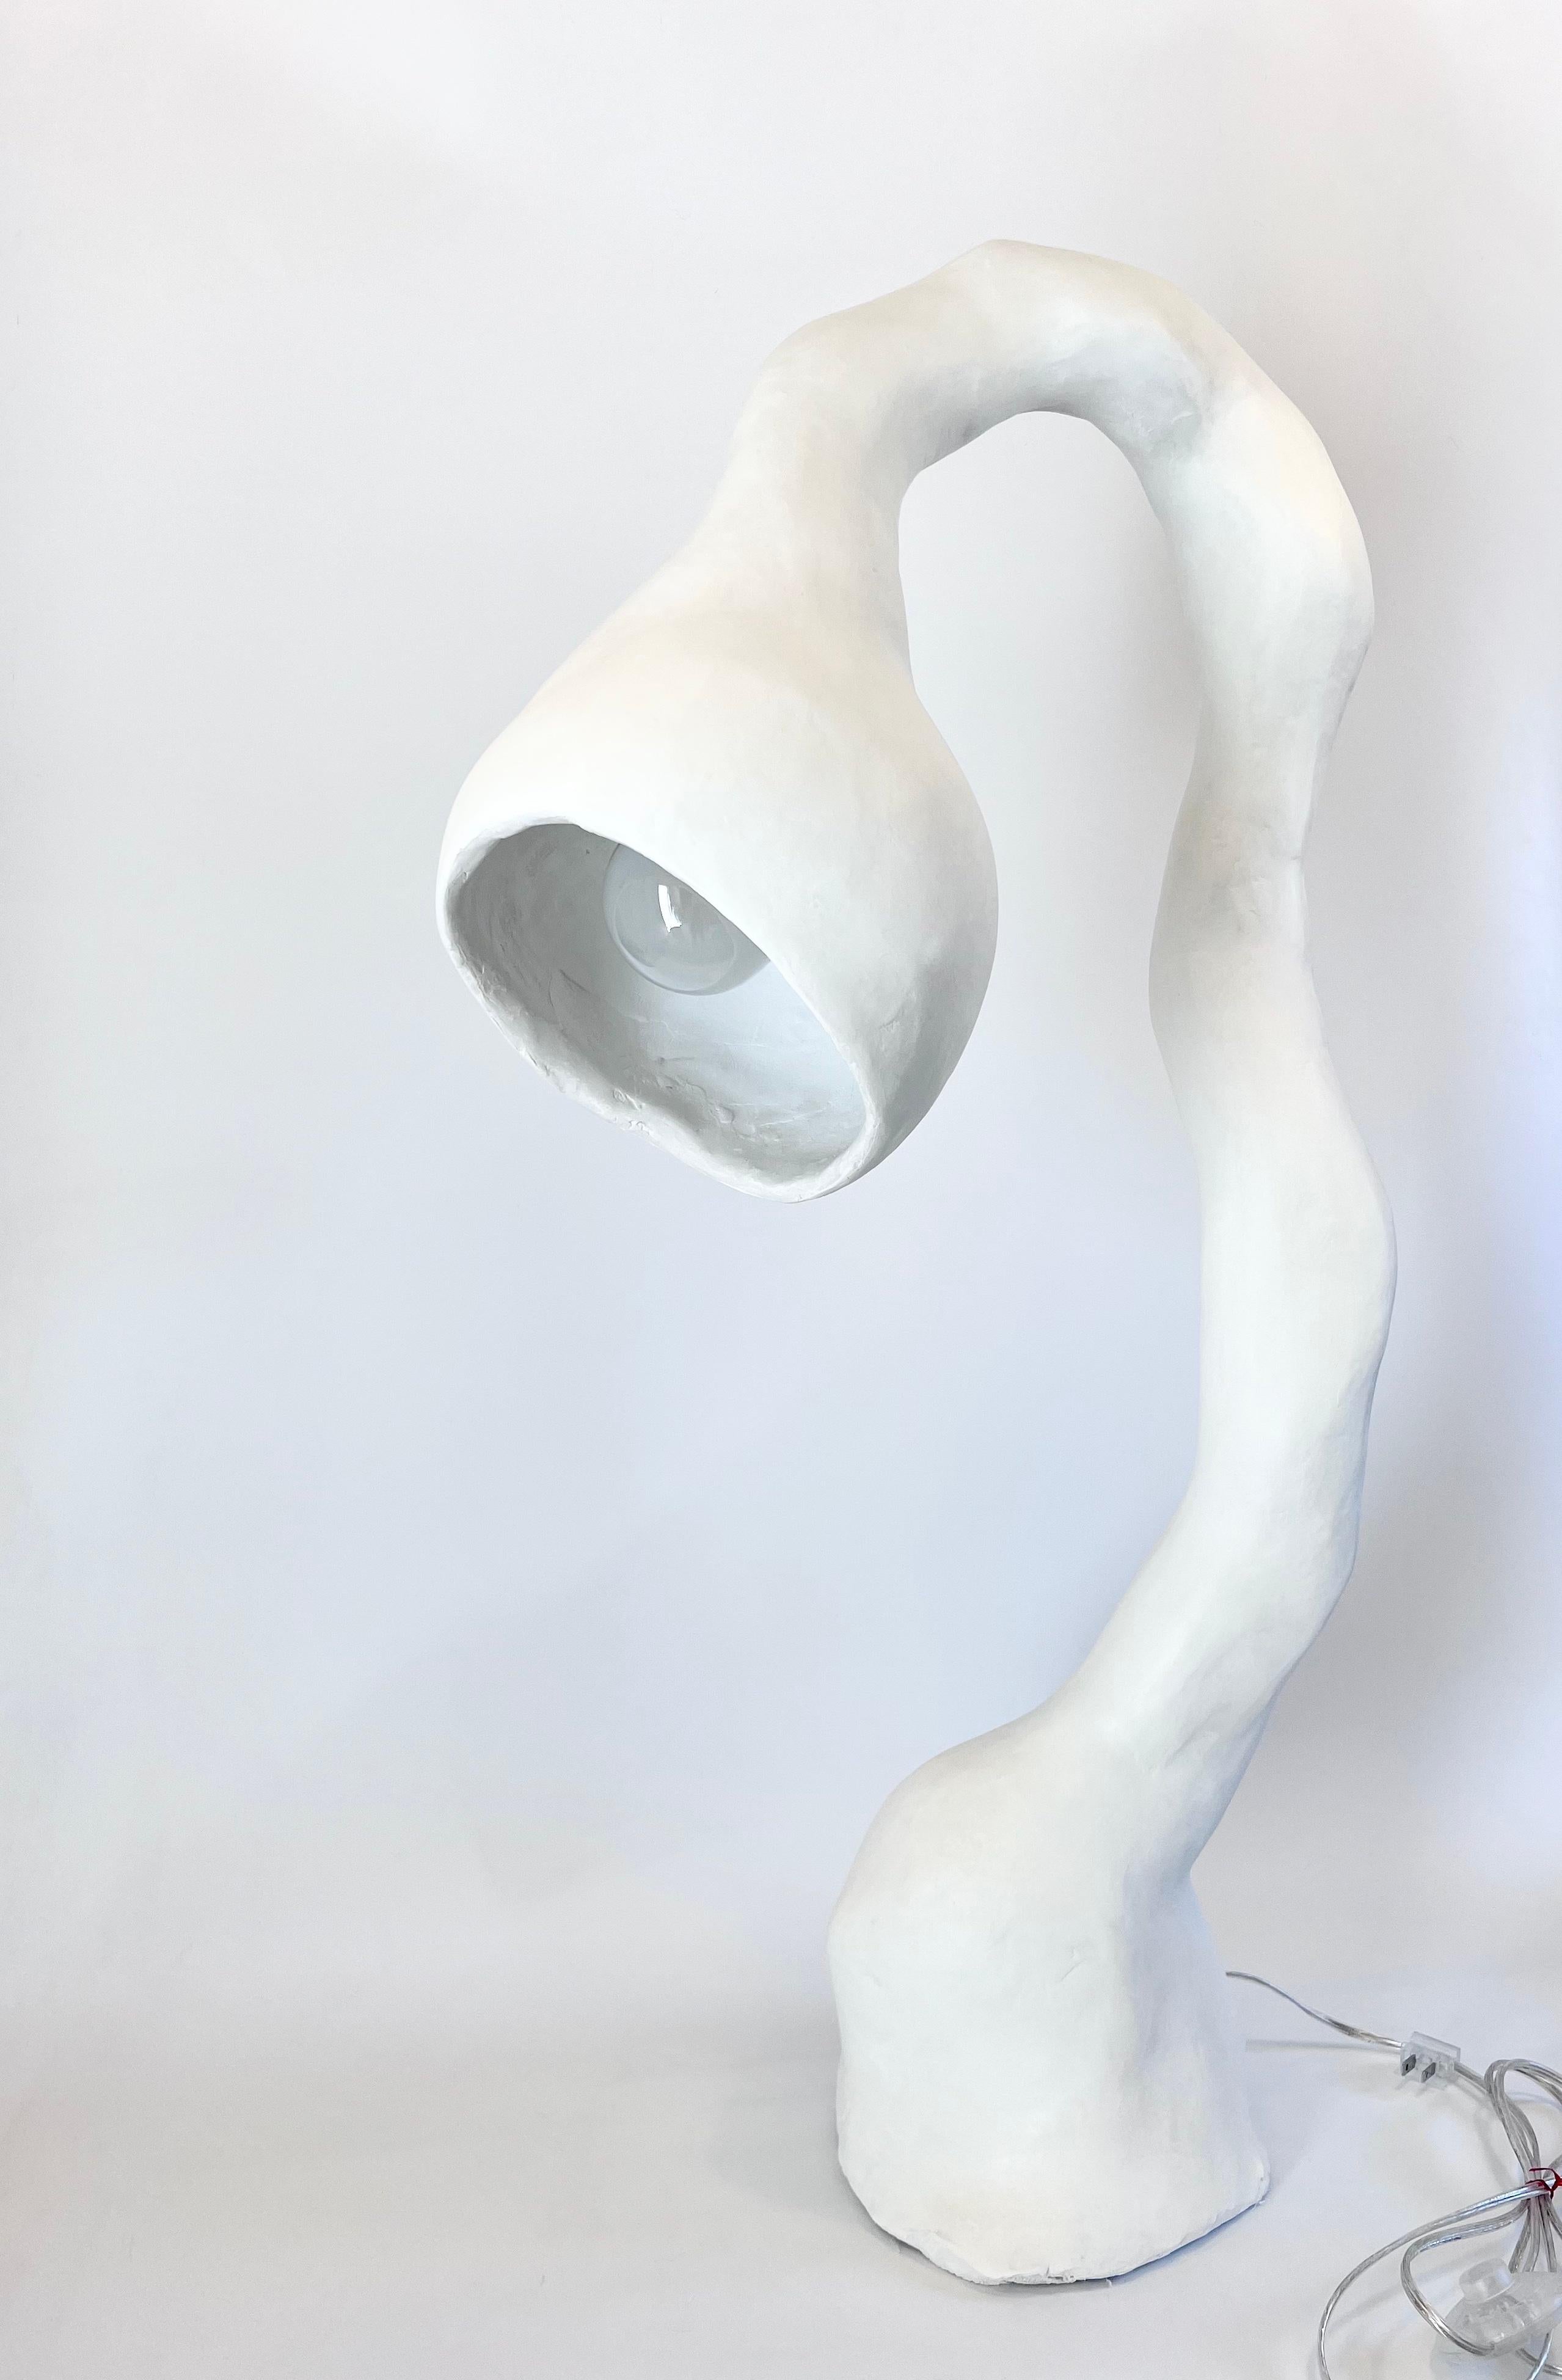 Le lampadaire N.005 de la série Biomorphic du Studio Chora s'inspire de la nature de l'expérience humaine. Il s'agit d'une sculpture lumineuse de deuxième génération, fabriquée à la main à partir d'une pierre composite à base de plâtre. Le composite